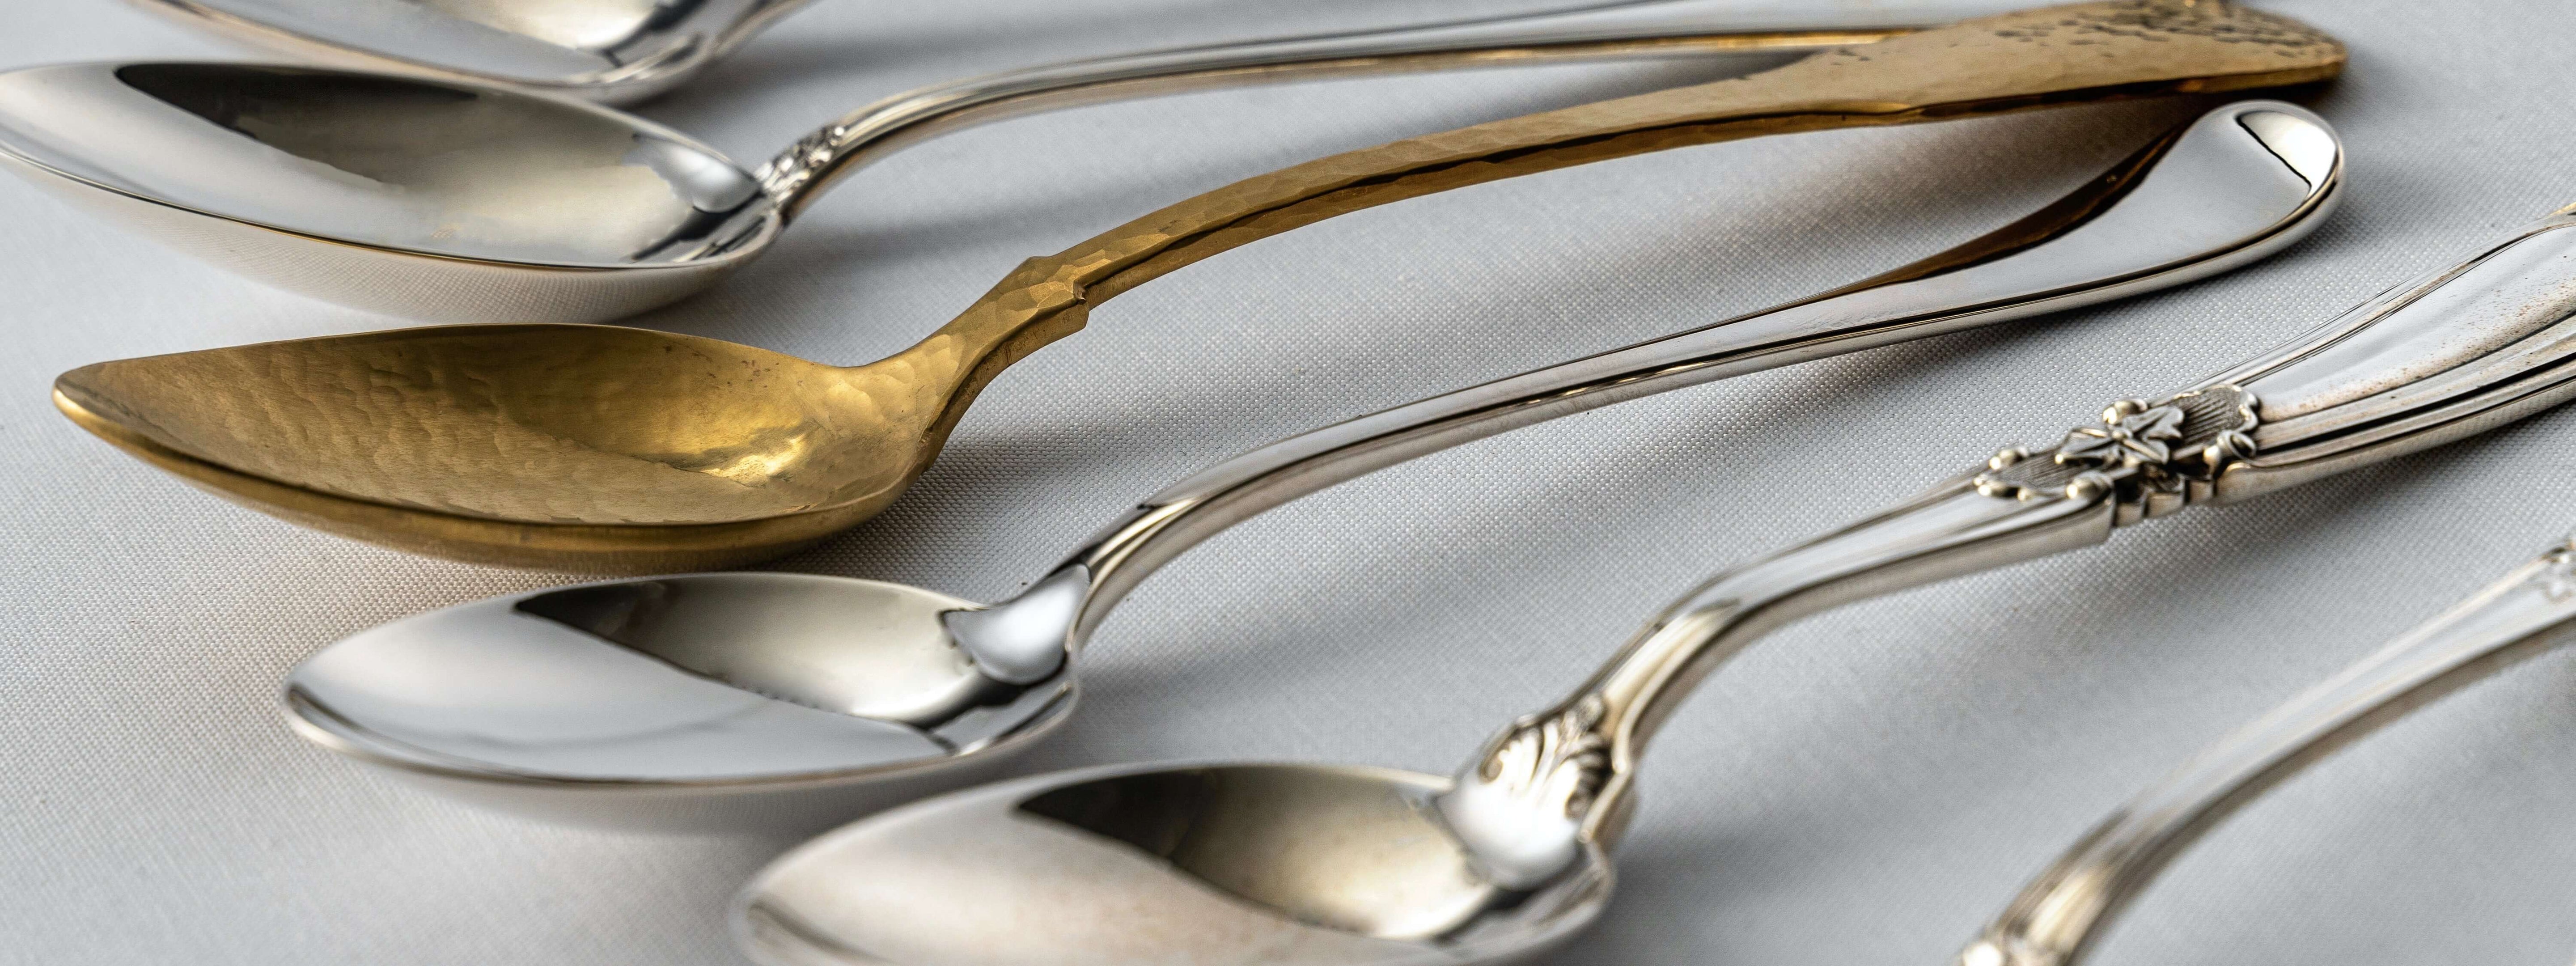 Silver-Silverware-Cutlery | Piece-By-Zion-Hadad